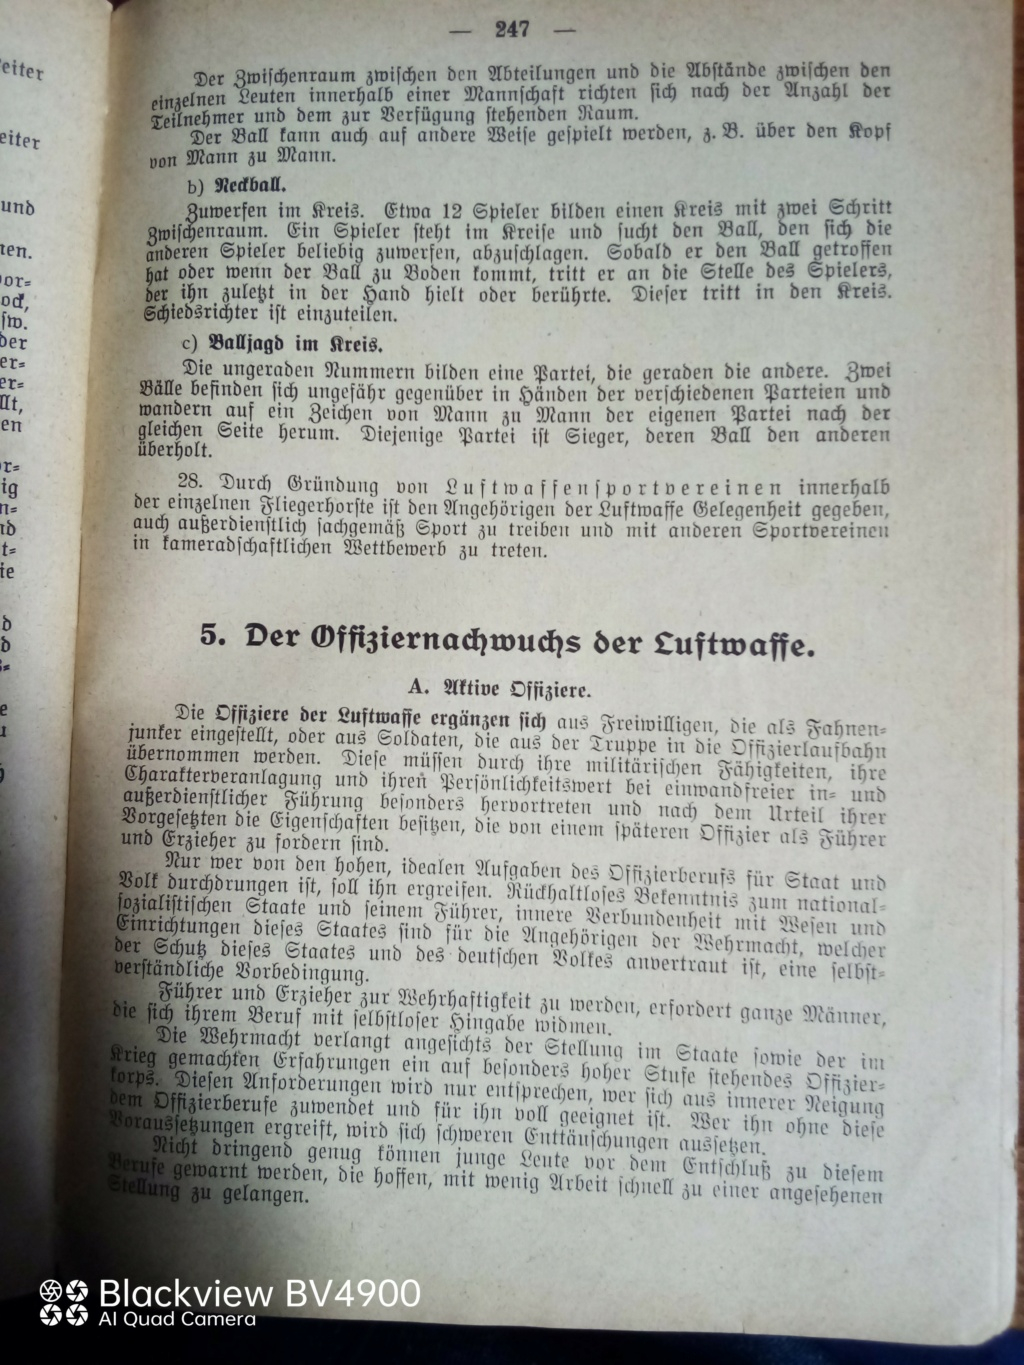 Handbucher der Luftwaffe - Page 4 Img_2321